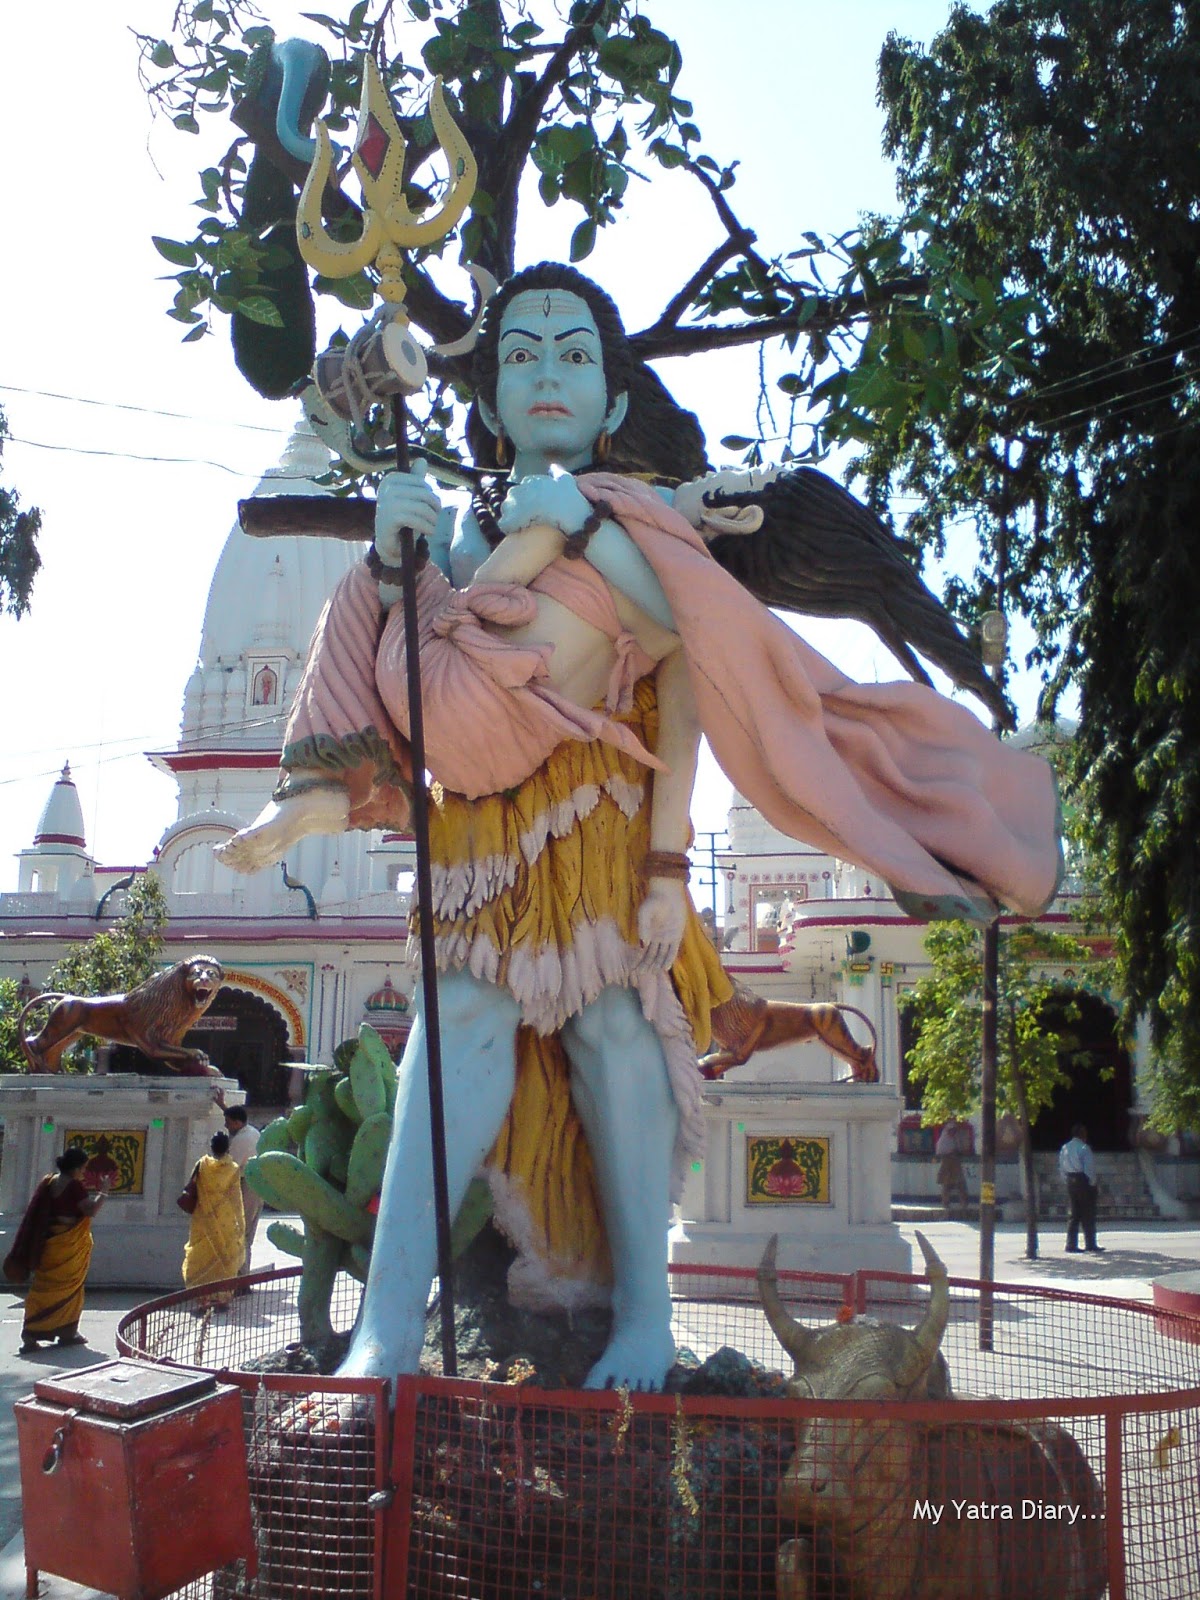 http://4.bp.blogspot.com/-Wgn4kIB0QFs/ToHGBQC_wMI/AAAAAAAABus/WxPGShtFG18/s1600/Daksh+Prajapati+Shiva+Temple+in+Haridwar+-+Lord+Shiva+holding+His+consort+Sati.jpg